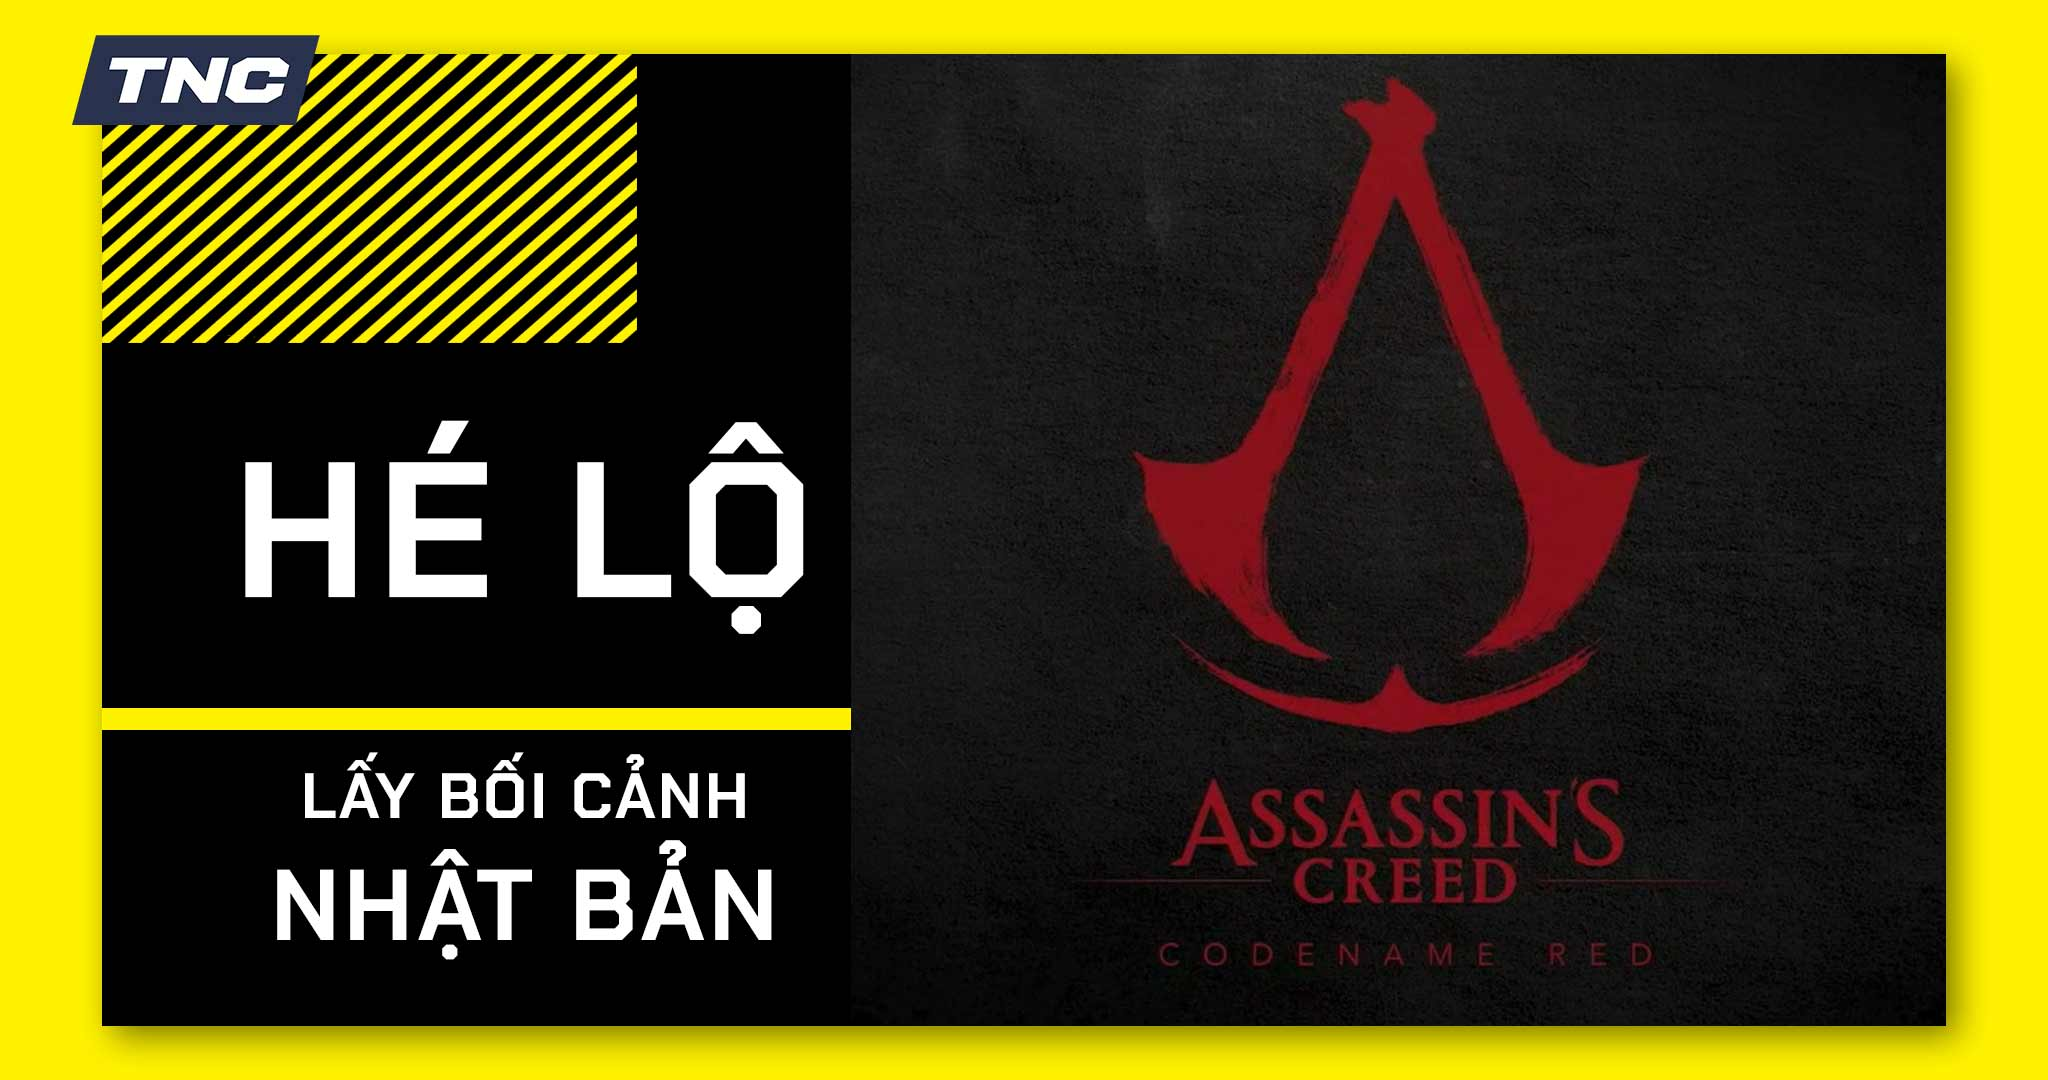 Assassin's Creed Red hé lộ lấy bối cảnh ở Xứ Sở Hoa Anh Đào